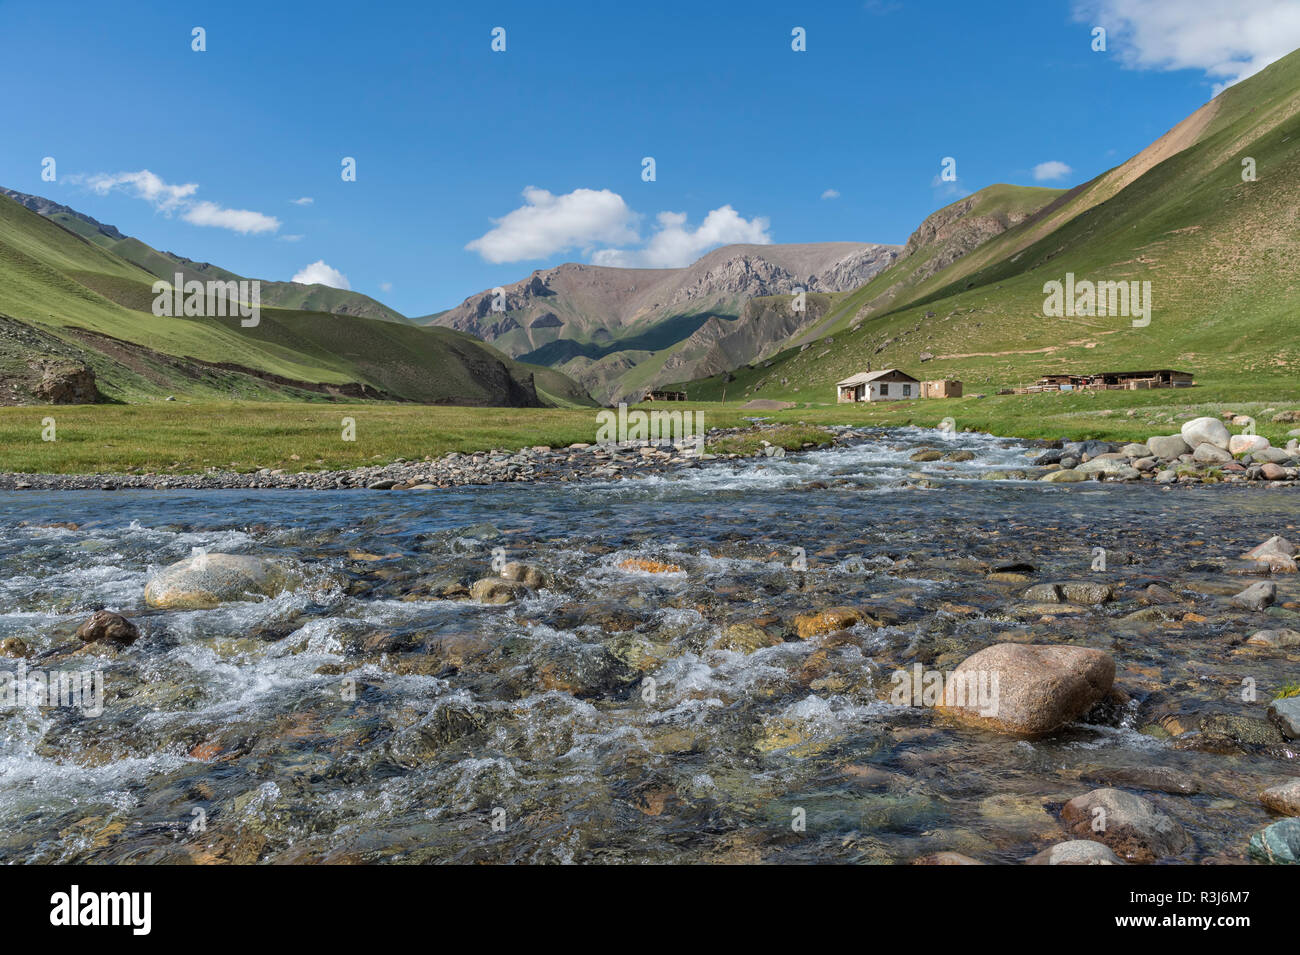 Petit village le long d'une rivière de montagne, Sary Jaz valley, région de l'Issyk Kul, Kirghizistan Banque D'Images